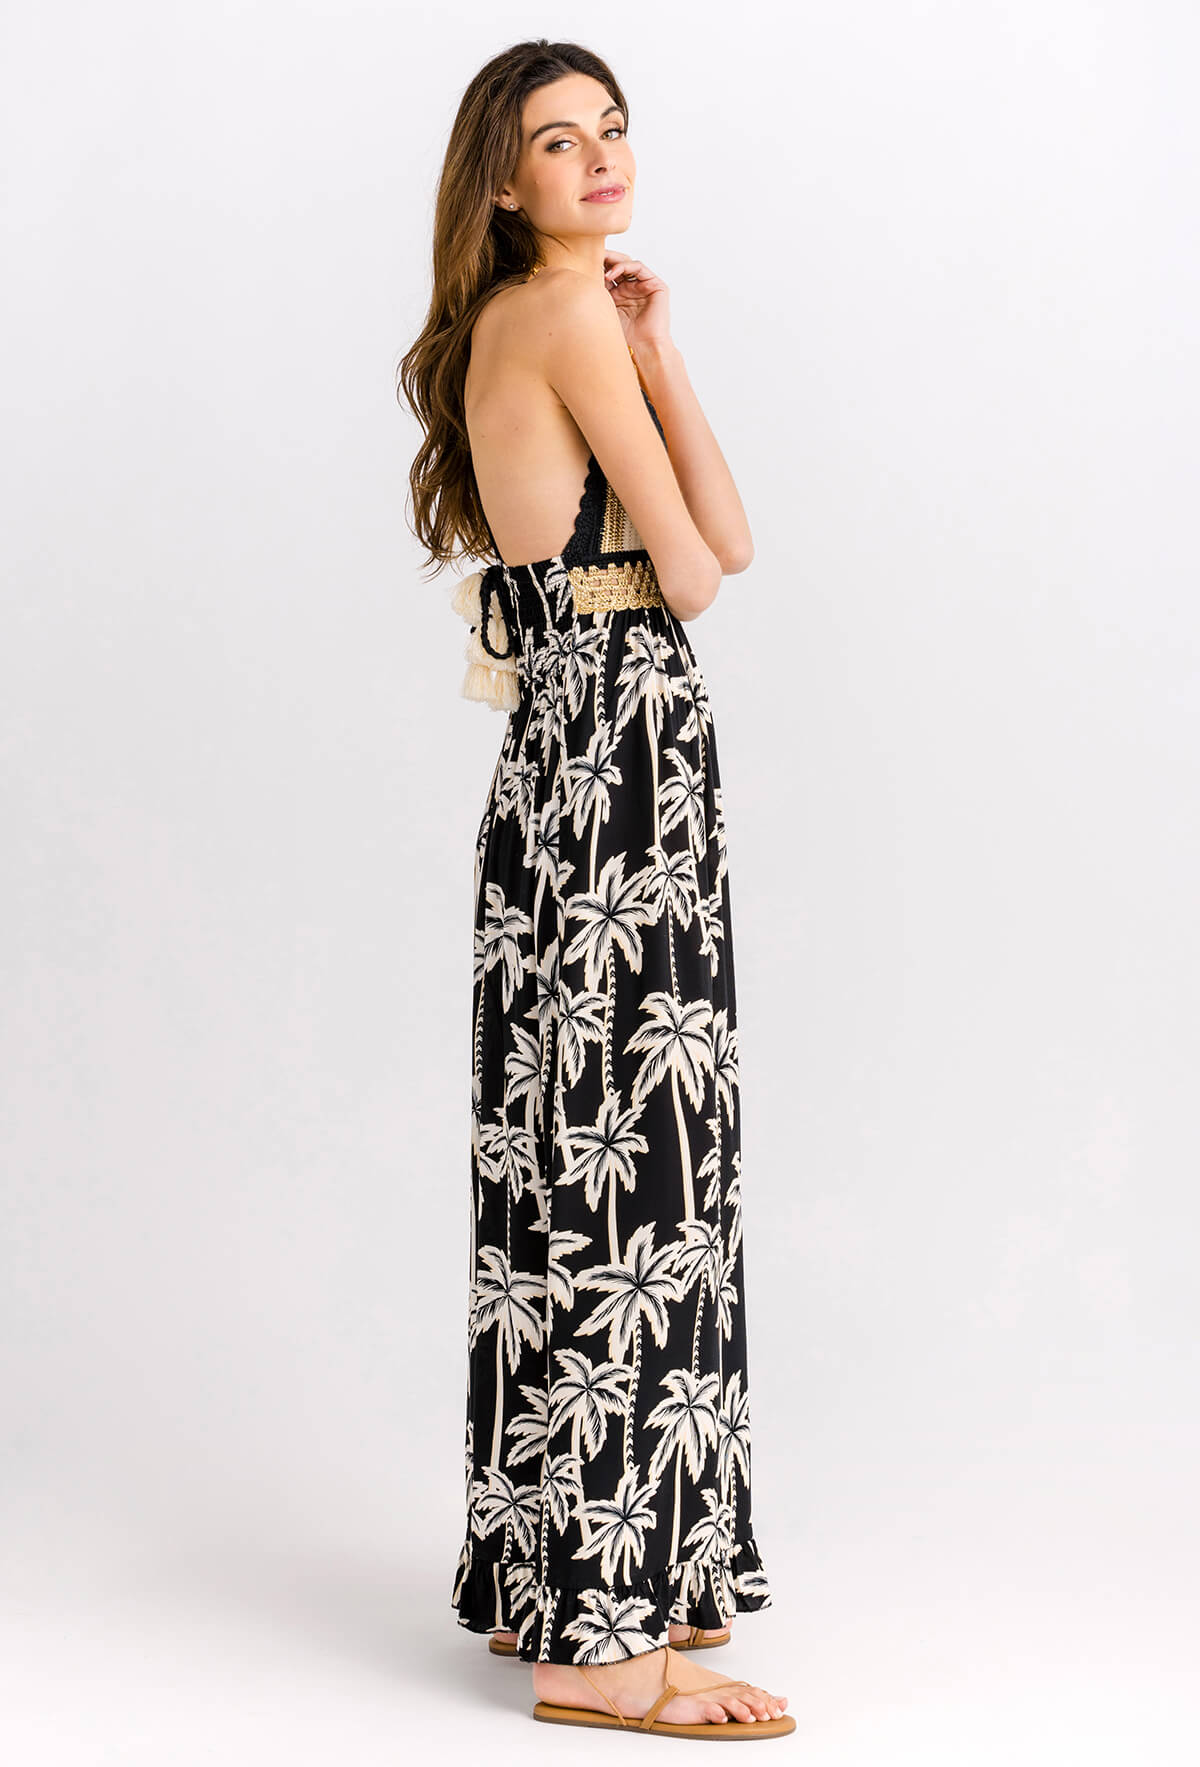 Surf Gypsy Festival Palm Print Crochet Maxi Dress